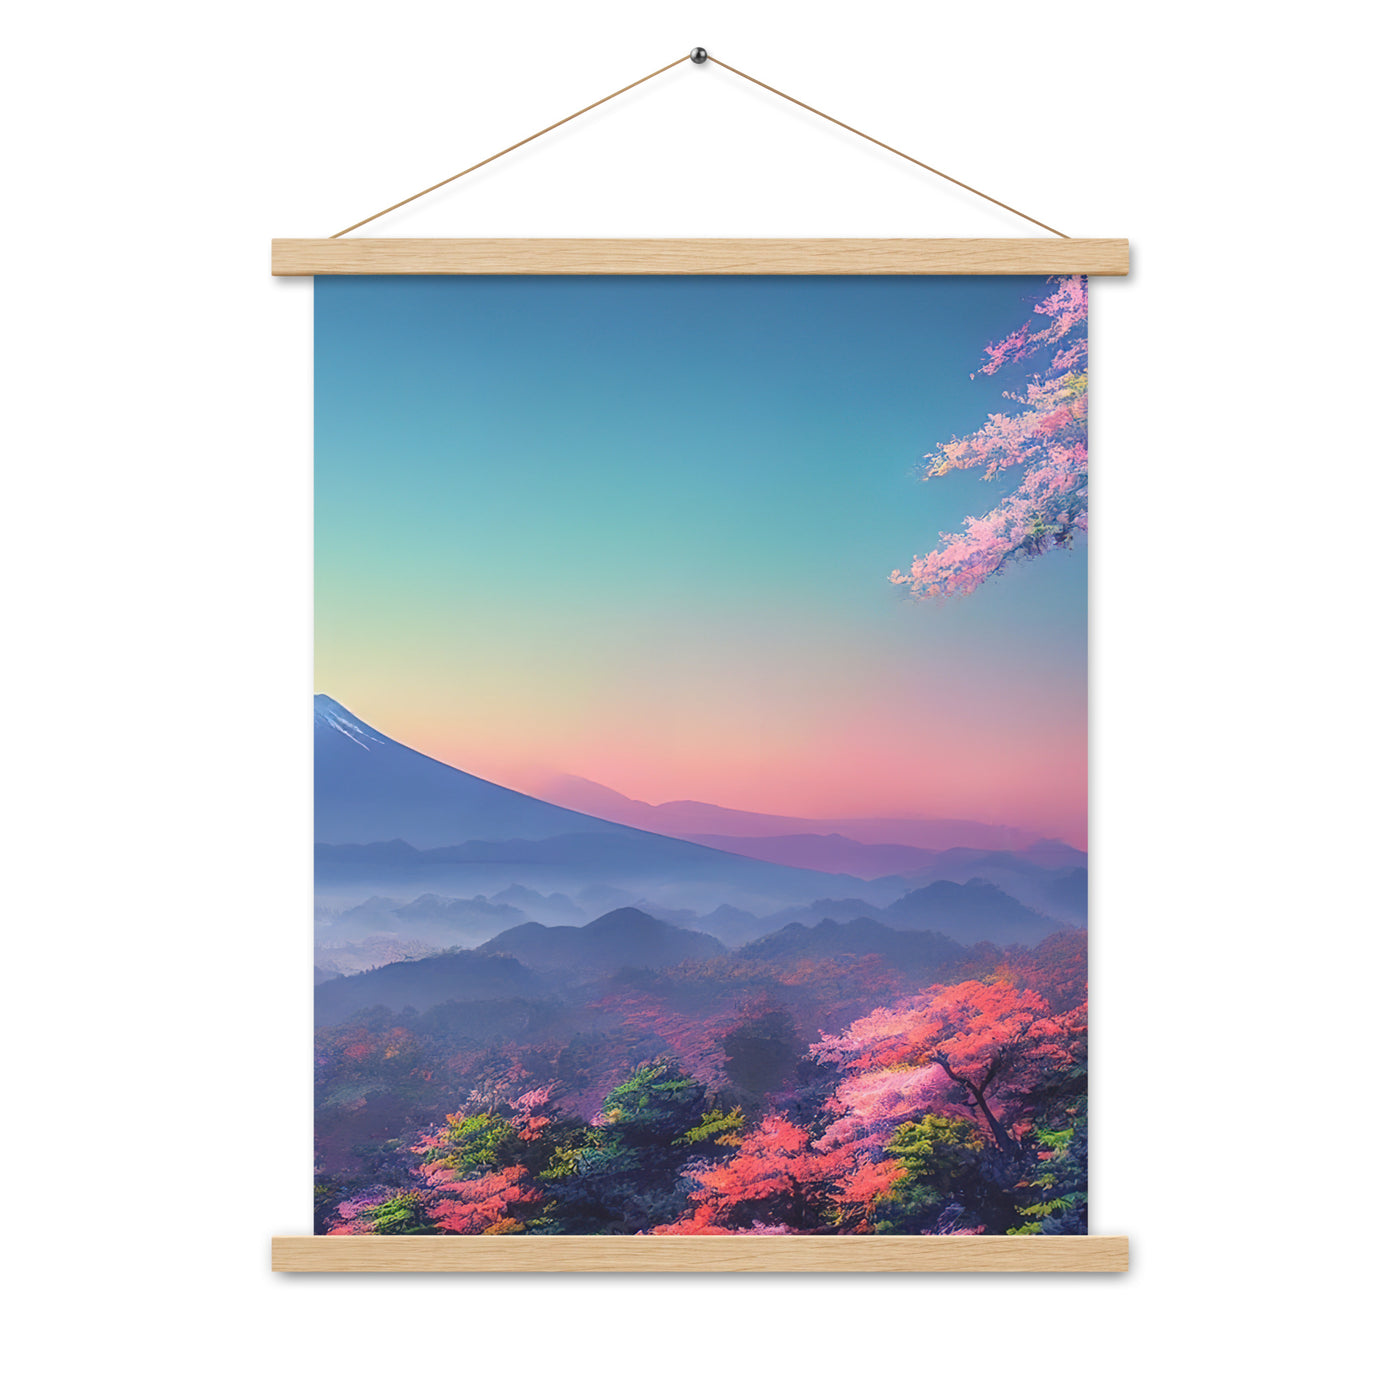 Berg und Wald mit pinken Bäumen - Landschaftsmalerei - Premium Poster mit Aufhängung berge xxx Oak 45.7 x 61 cm